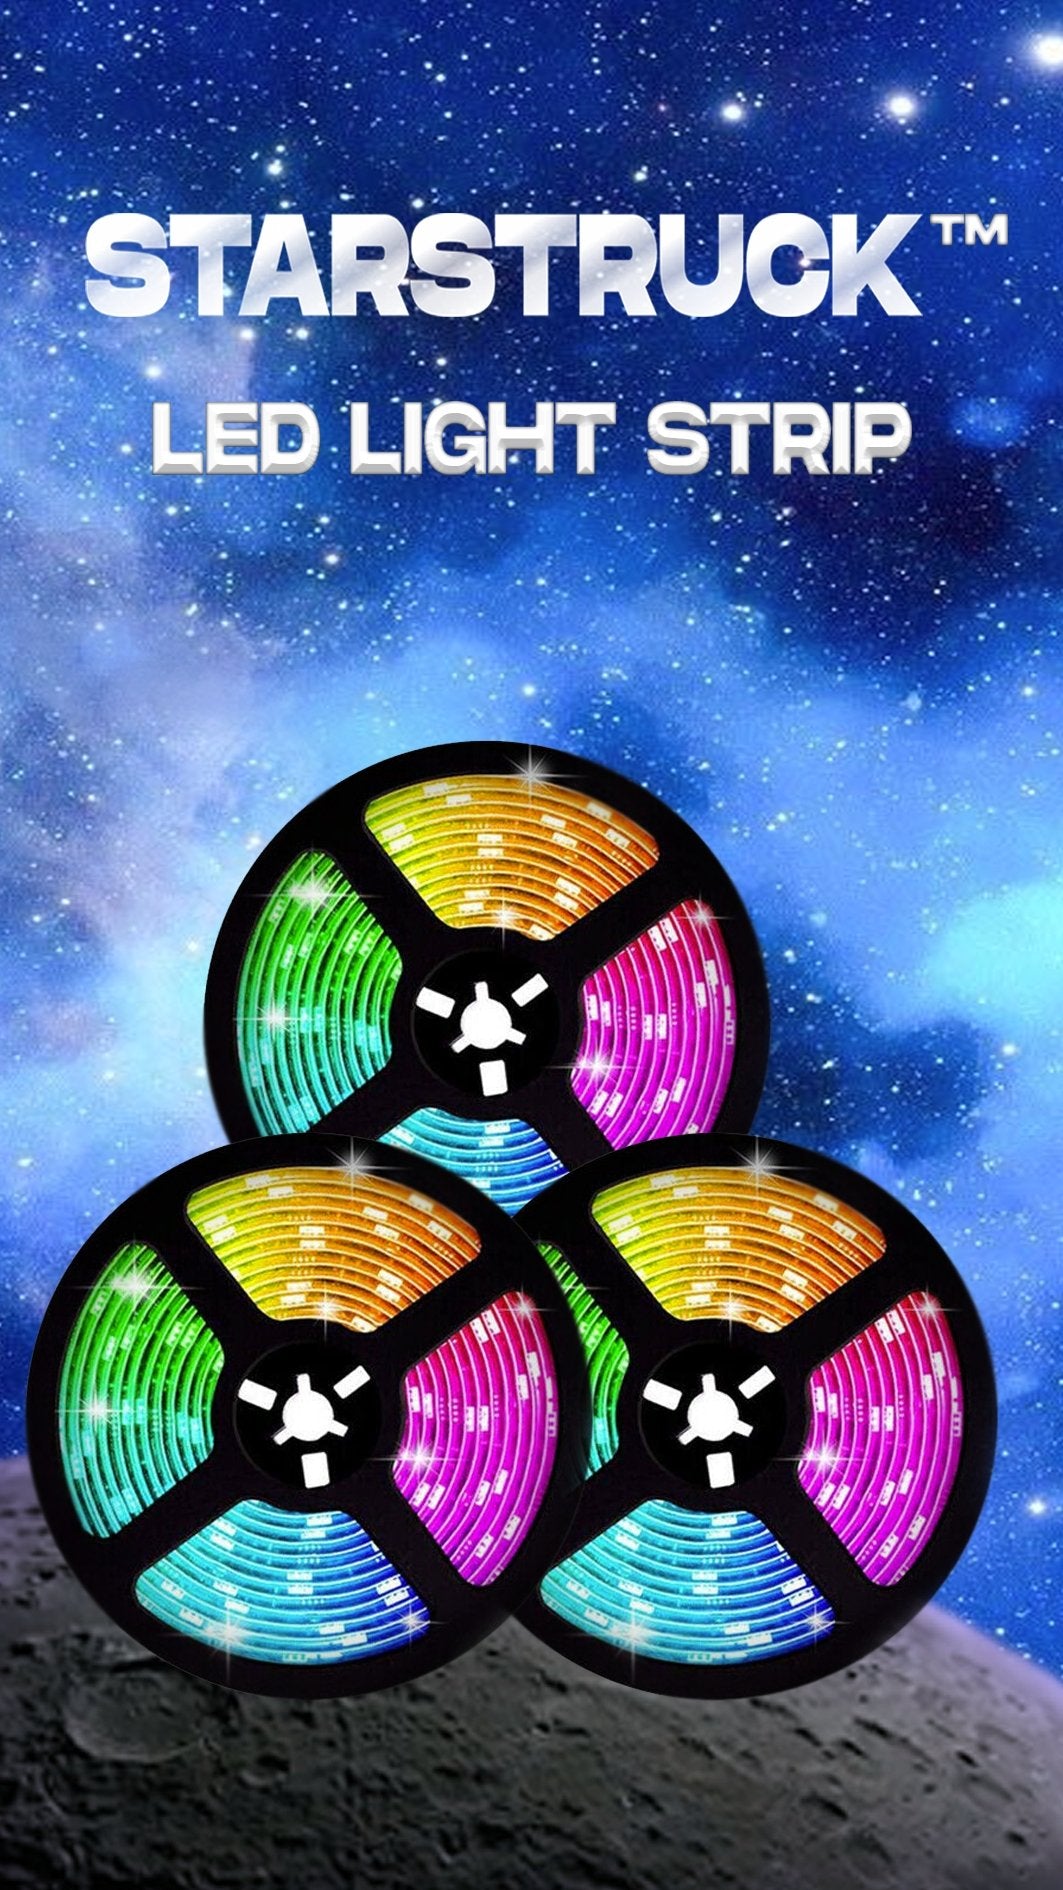 STARSTRUCK™ BLUETOOTH LED LIGHT STRIP | Starstruck Leds